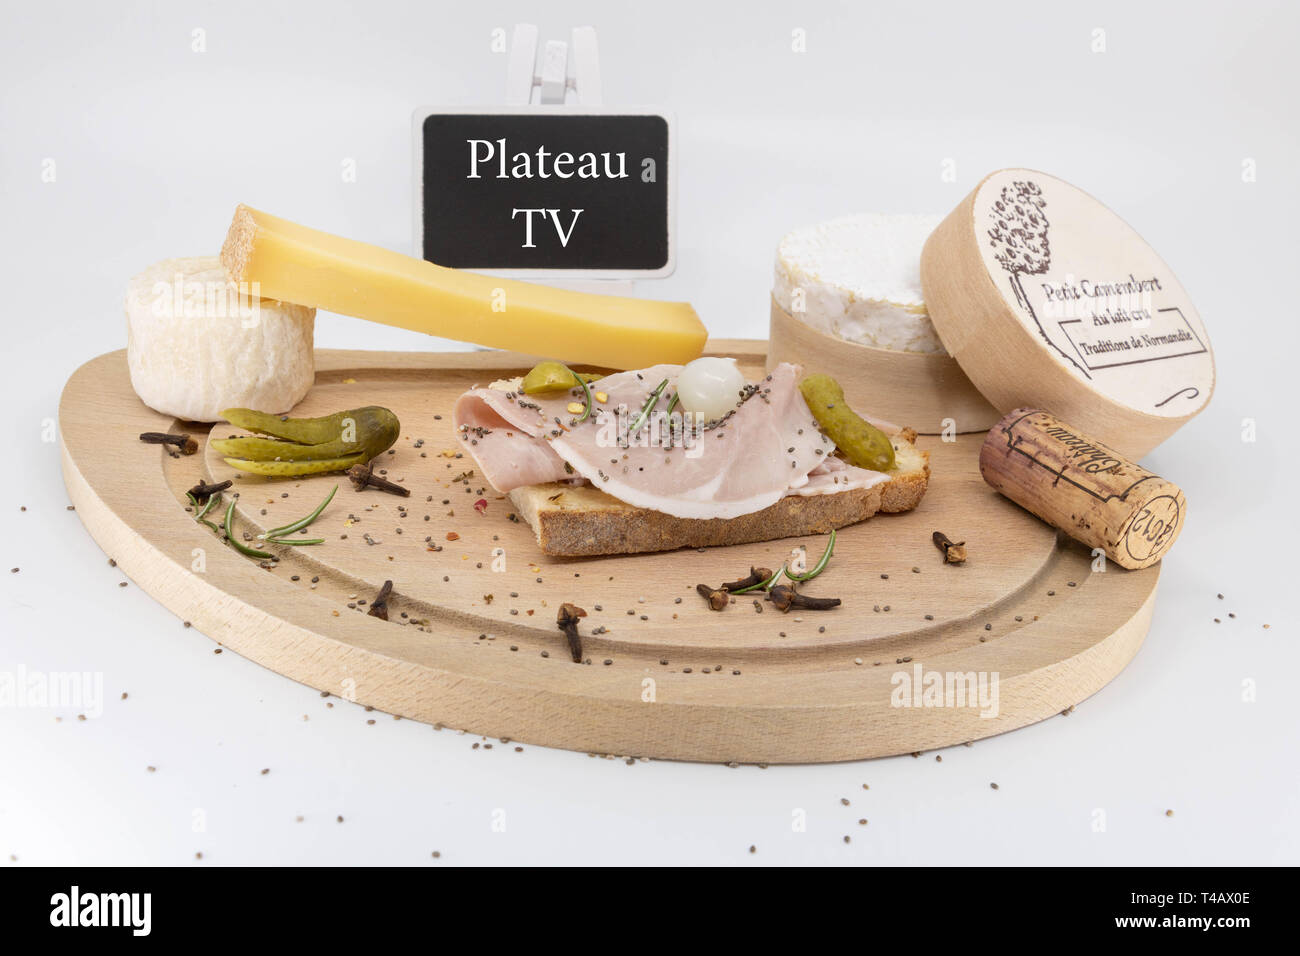 Plat déjeuner bac (écrit en français) en face de la télévision en France, plateau en bois avec des fromages et viandes froides Banque D'Images